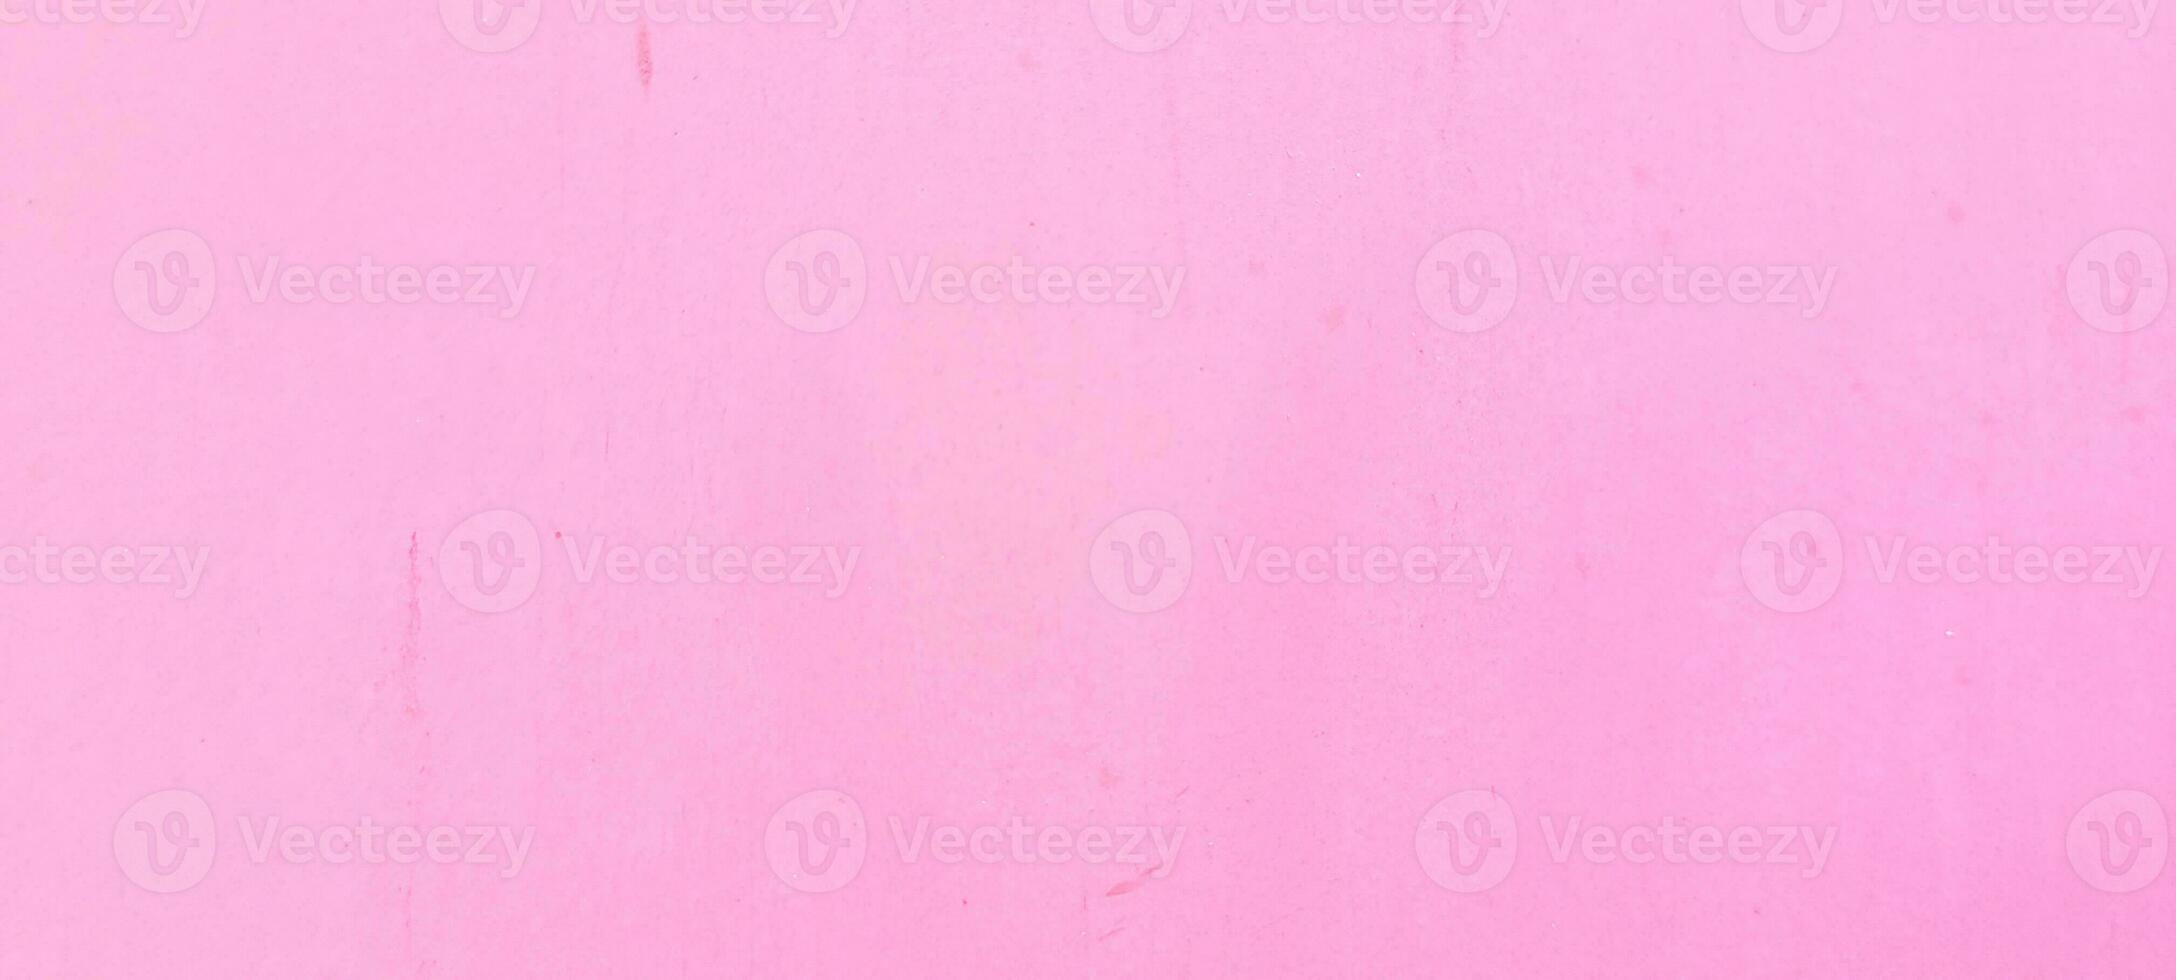 addolcire il tuo progetti con il fascino di leggero rosa un' vivace e elegante sfondo per evidenziare il tuo creatività. ottenere esso adesso e In piedi su nel stile foto